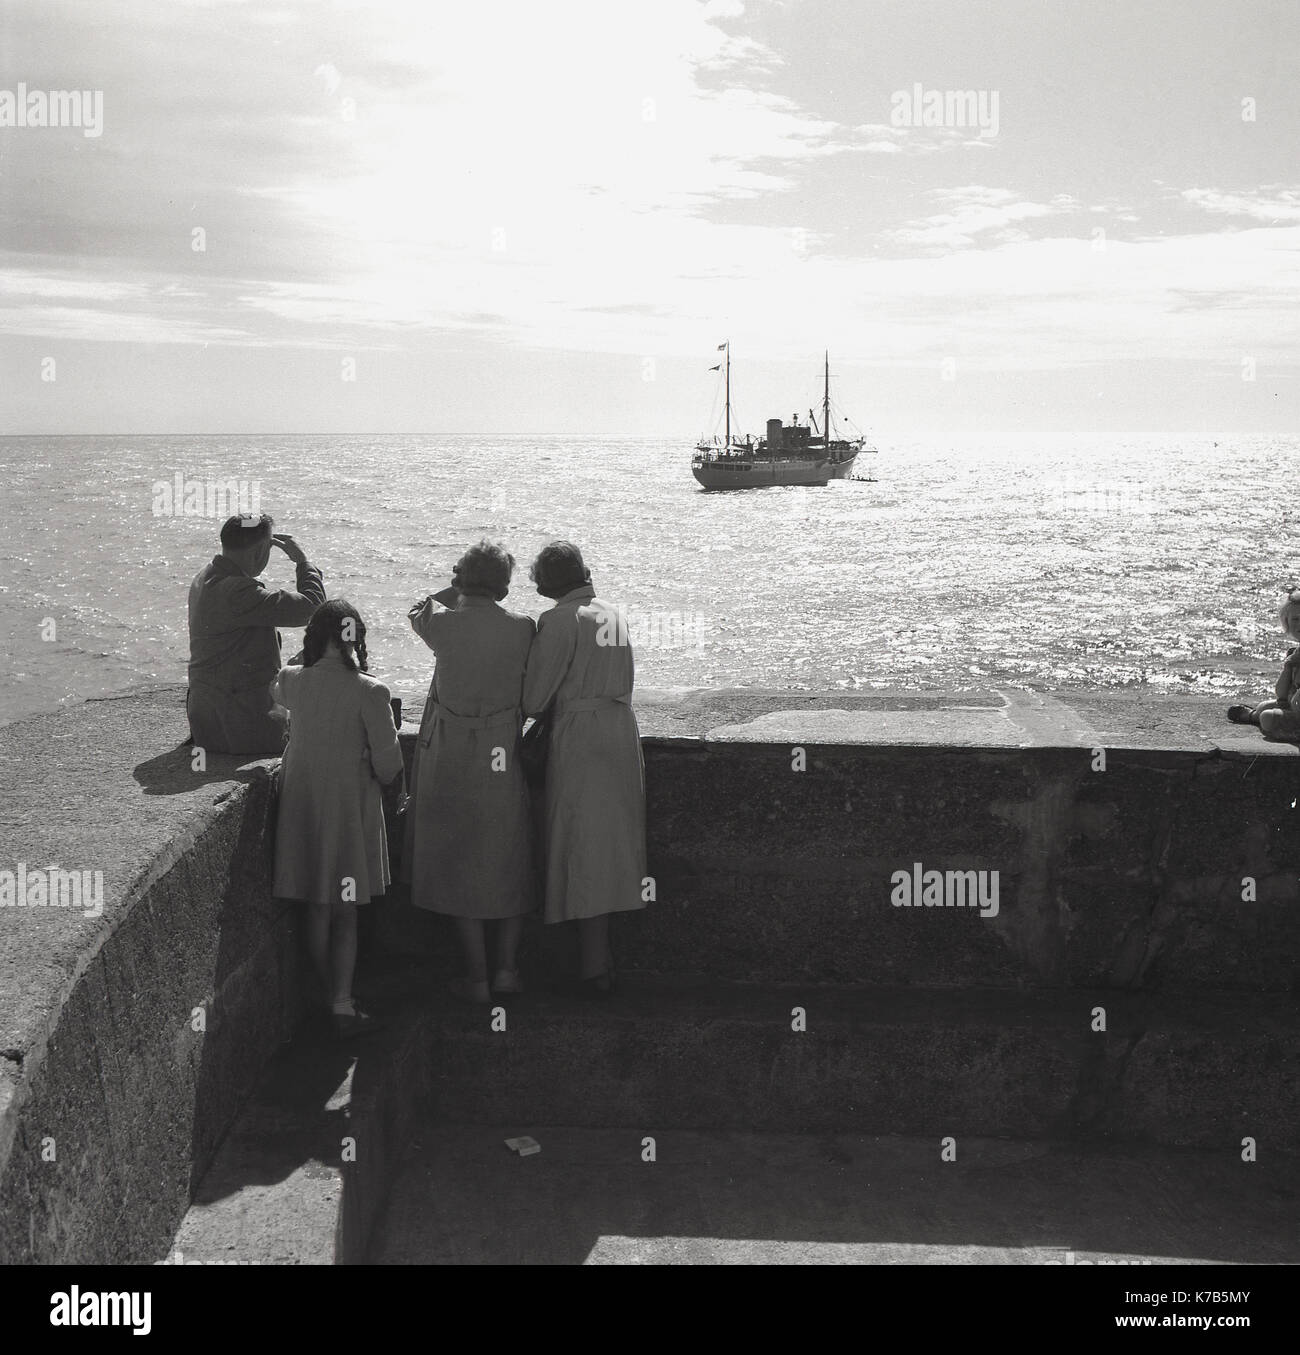 Dans les années 1950, historique, homme, femme et enfant se tiennent à la jetée en regardant les bateaux dans la baie, sachant peut-être quelqu'un qui a quitté les côtes, l'Irlande du Nord. Banque D'Images